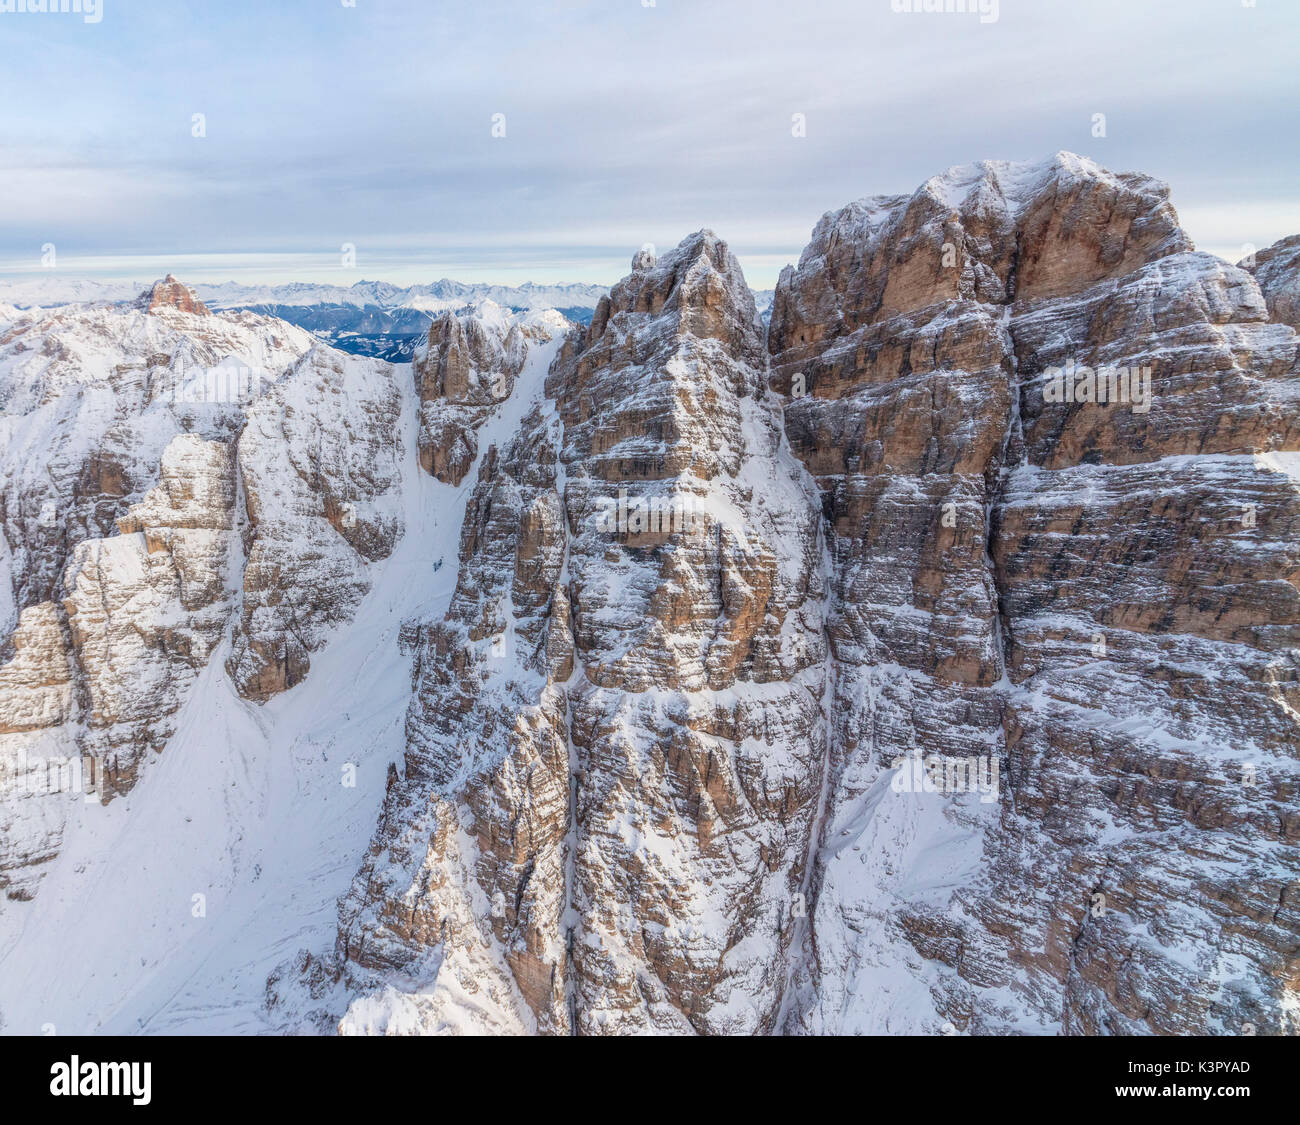 Luftaufnahme von den schneebedeckten Gipfeln des Monte Cristallo Cortina D'Ampezzo Dolomiten Provinz Belluno Venetien Italien Europa Stockfoto